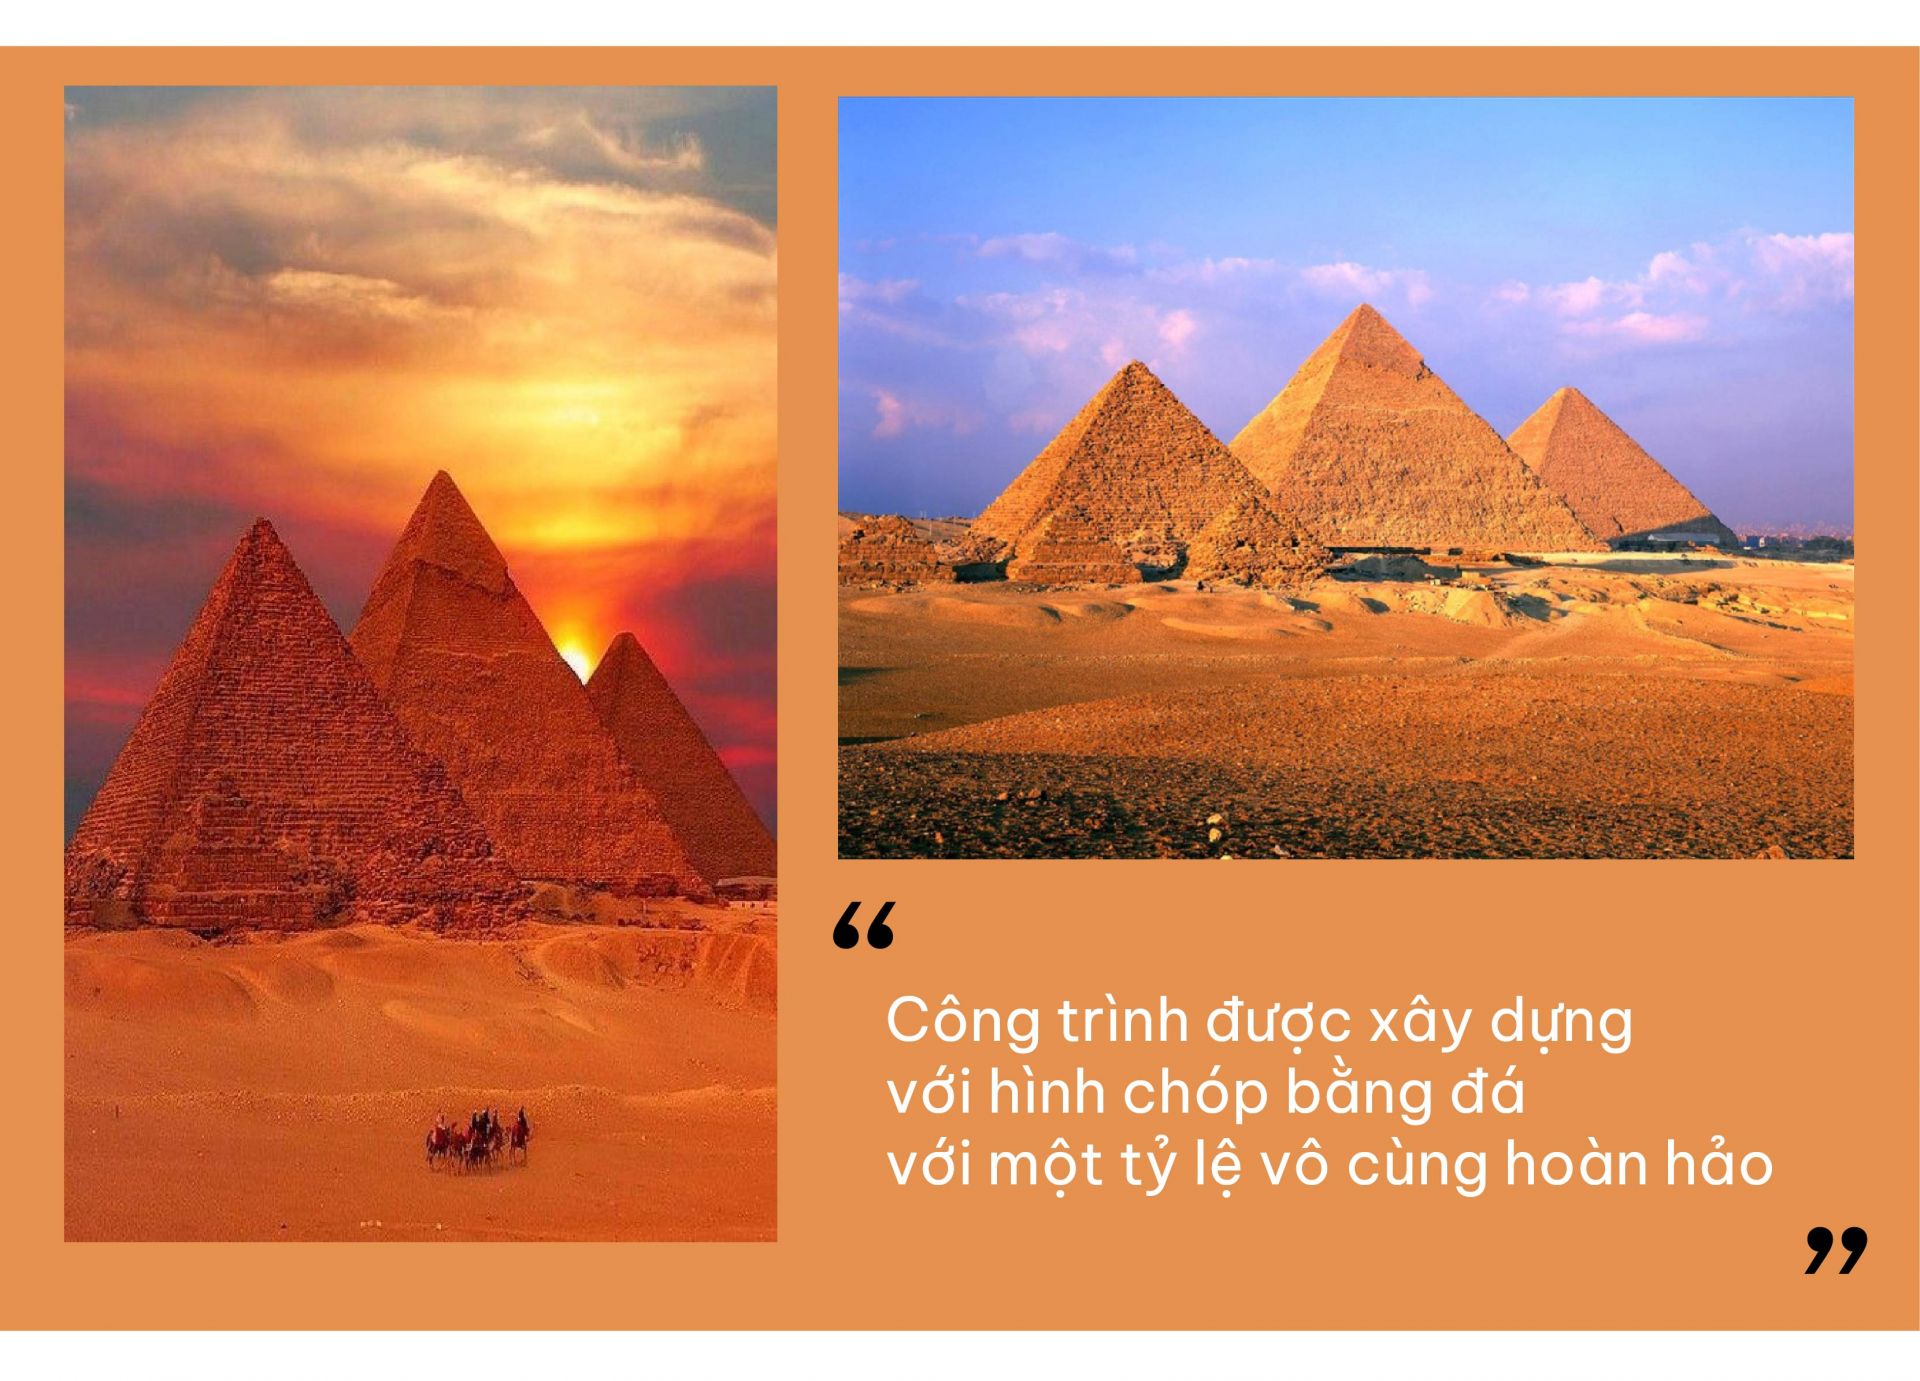 Được biết, các kim tự tháp Ai Cập đầu tiên năm ở vùng Saqqara thuộc phía Tây Bắc của Memphis. Trong đó kim tự tháp lâu đời nhất đó chính là Djoser được xây dựng vào triều đại thứ ba trong khoảng thời gian từ 2630 – 2611 TCN. Lối kiến trúc của những kim tự tháp đầu tiên này là do một kiến trúc sư là Imhotep thiết kế. Kim tự tháp Ai Cập được xem là công trình bằng đá nguyên khối cổ nhất thế giới. Trong đó theo những nghiên cứu thì để xây được một công trình kim tự tháp thì lượng nhân công khoảng từ 20.000 – 100.000 người.